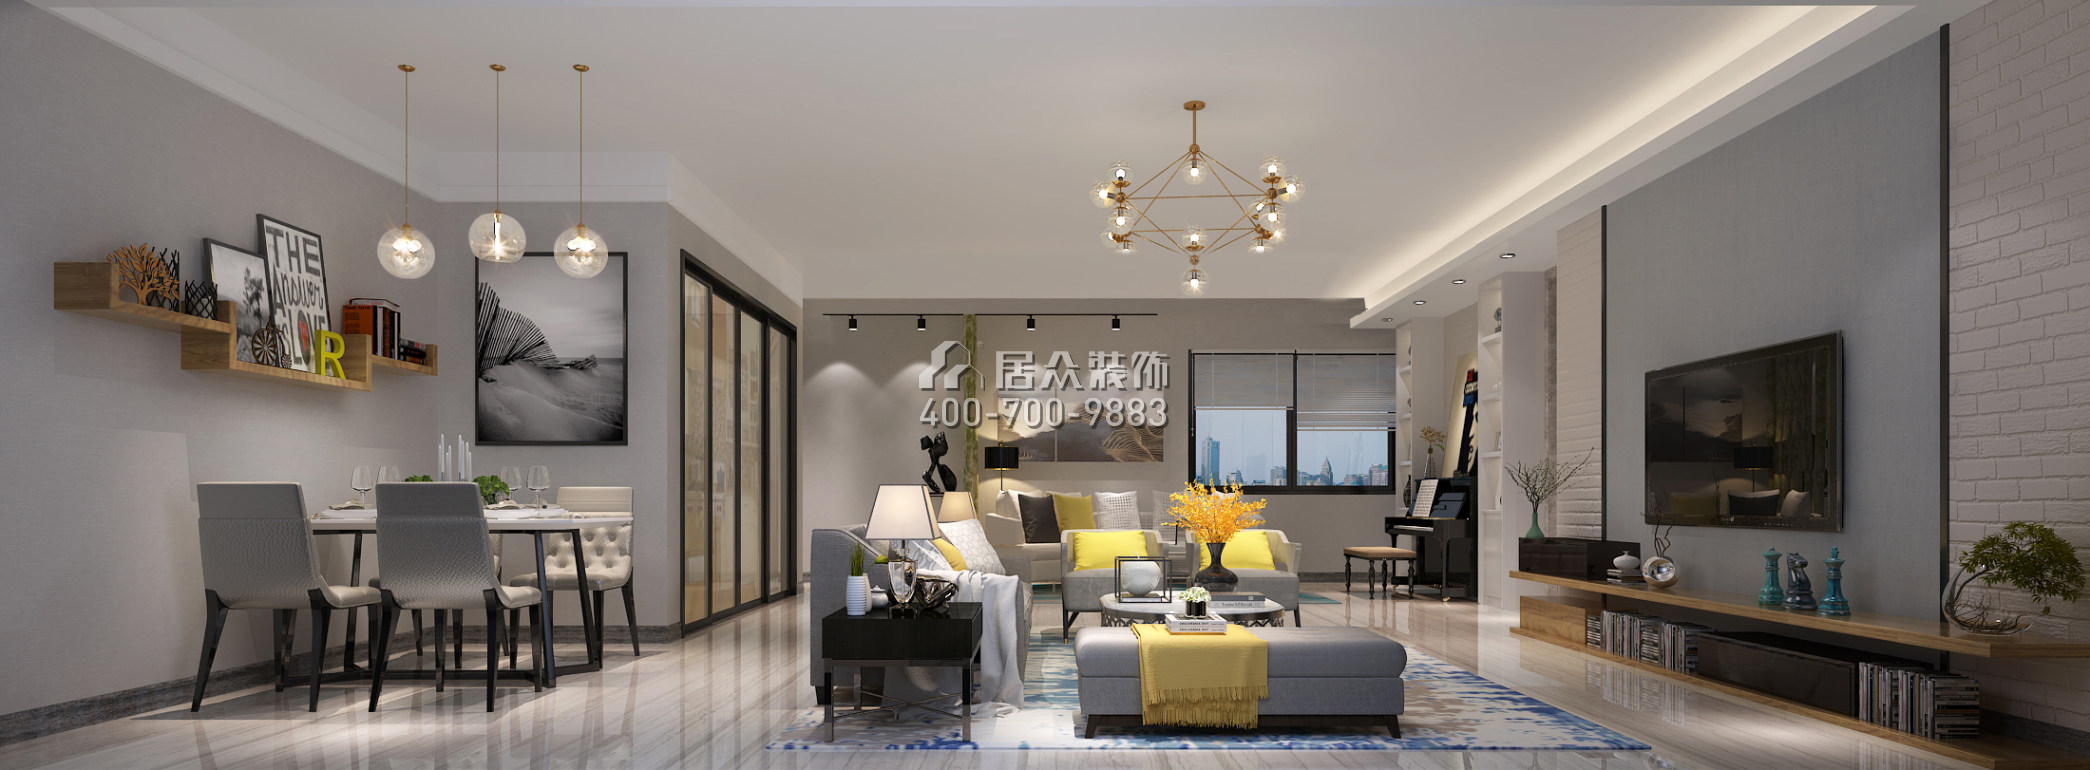 天悅灣140平方米現代簡約風格平層戶型客廳裝修效果圖